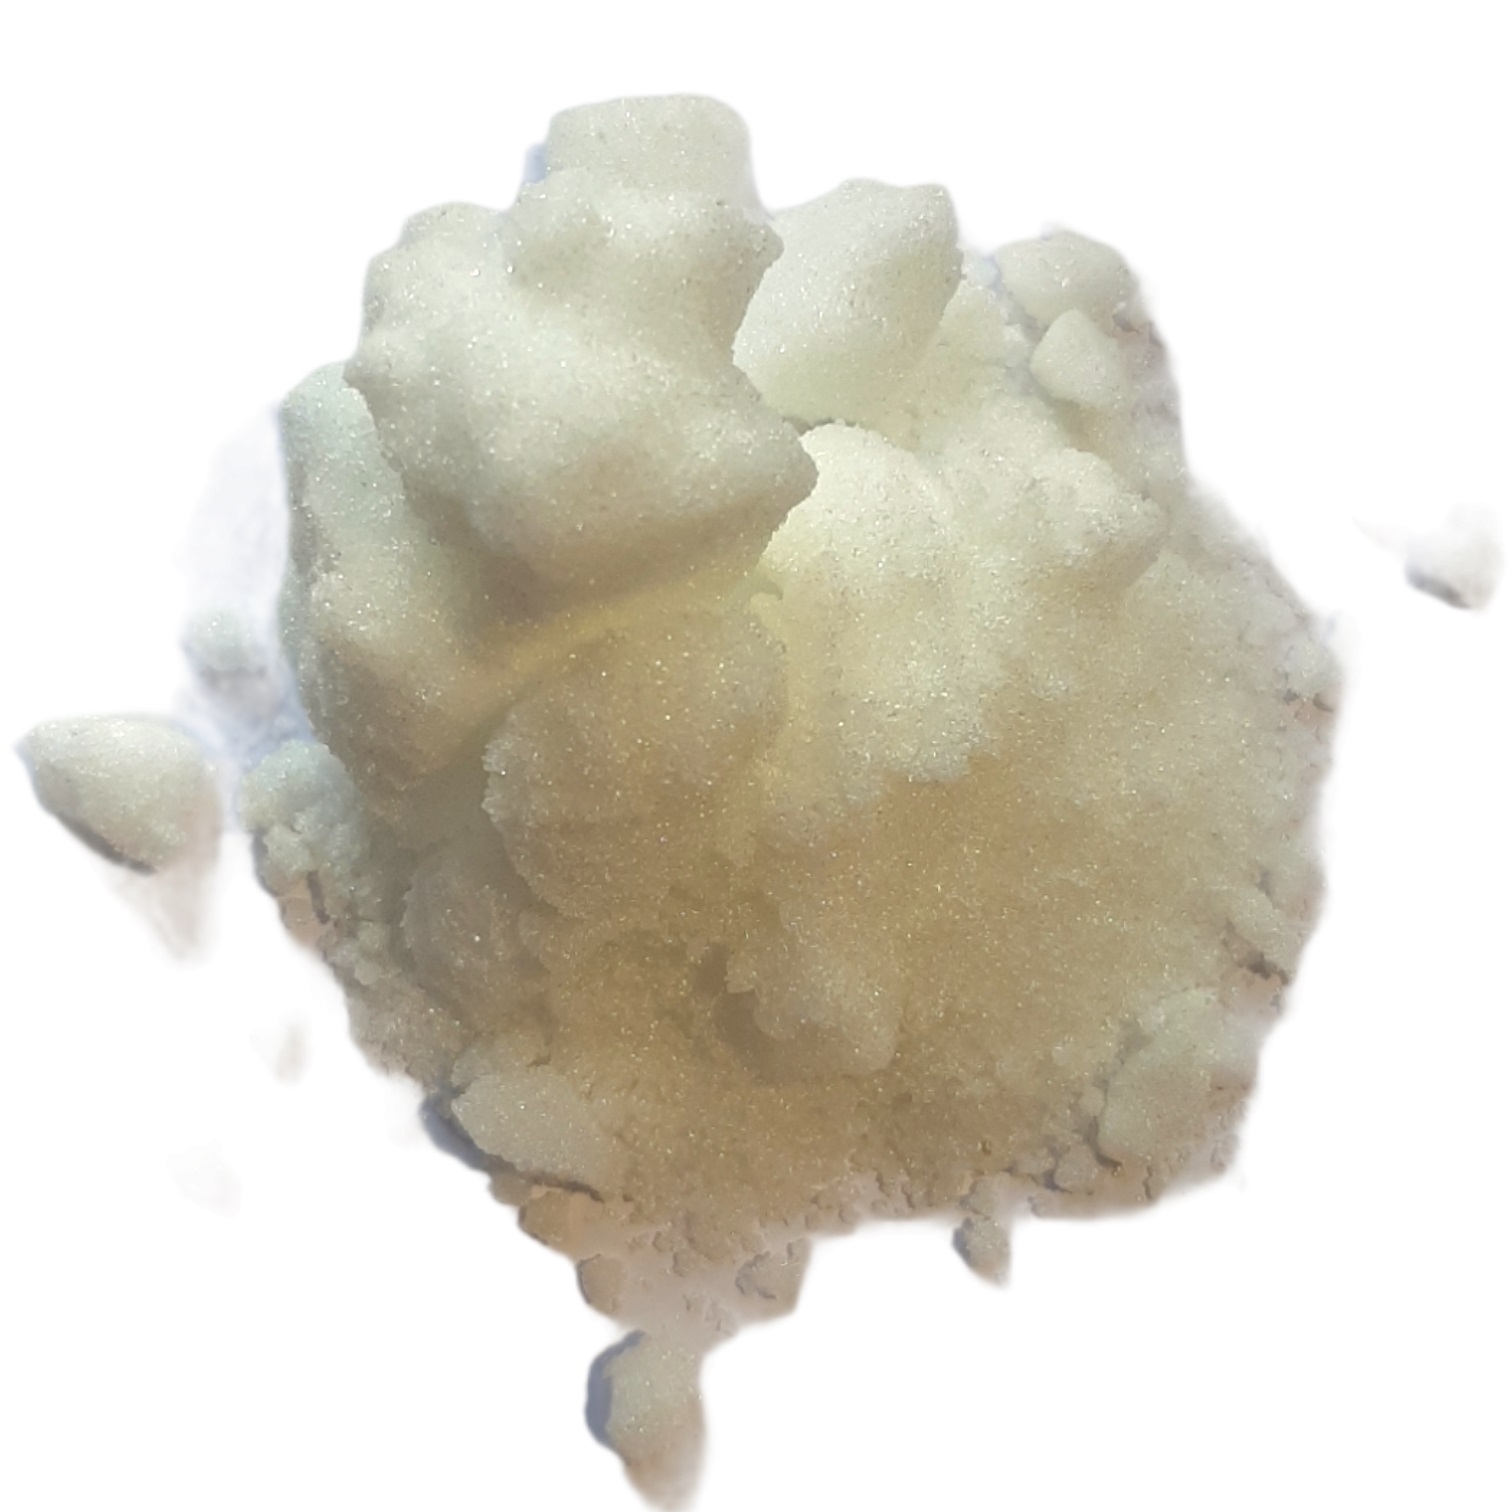 kans Kampioenschap Haven Online kopen: Kamfer (kristallen) - Cinnamomum camphoraKorting vanaf 500g  !500g > -10% op de basis prijs van 100g1kg > -20% op de basisprijs van  100g5kg > -24% op de basisprijs van 100g10kg > -